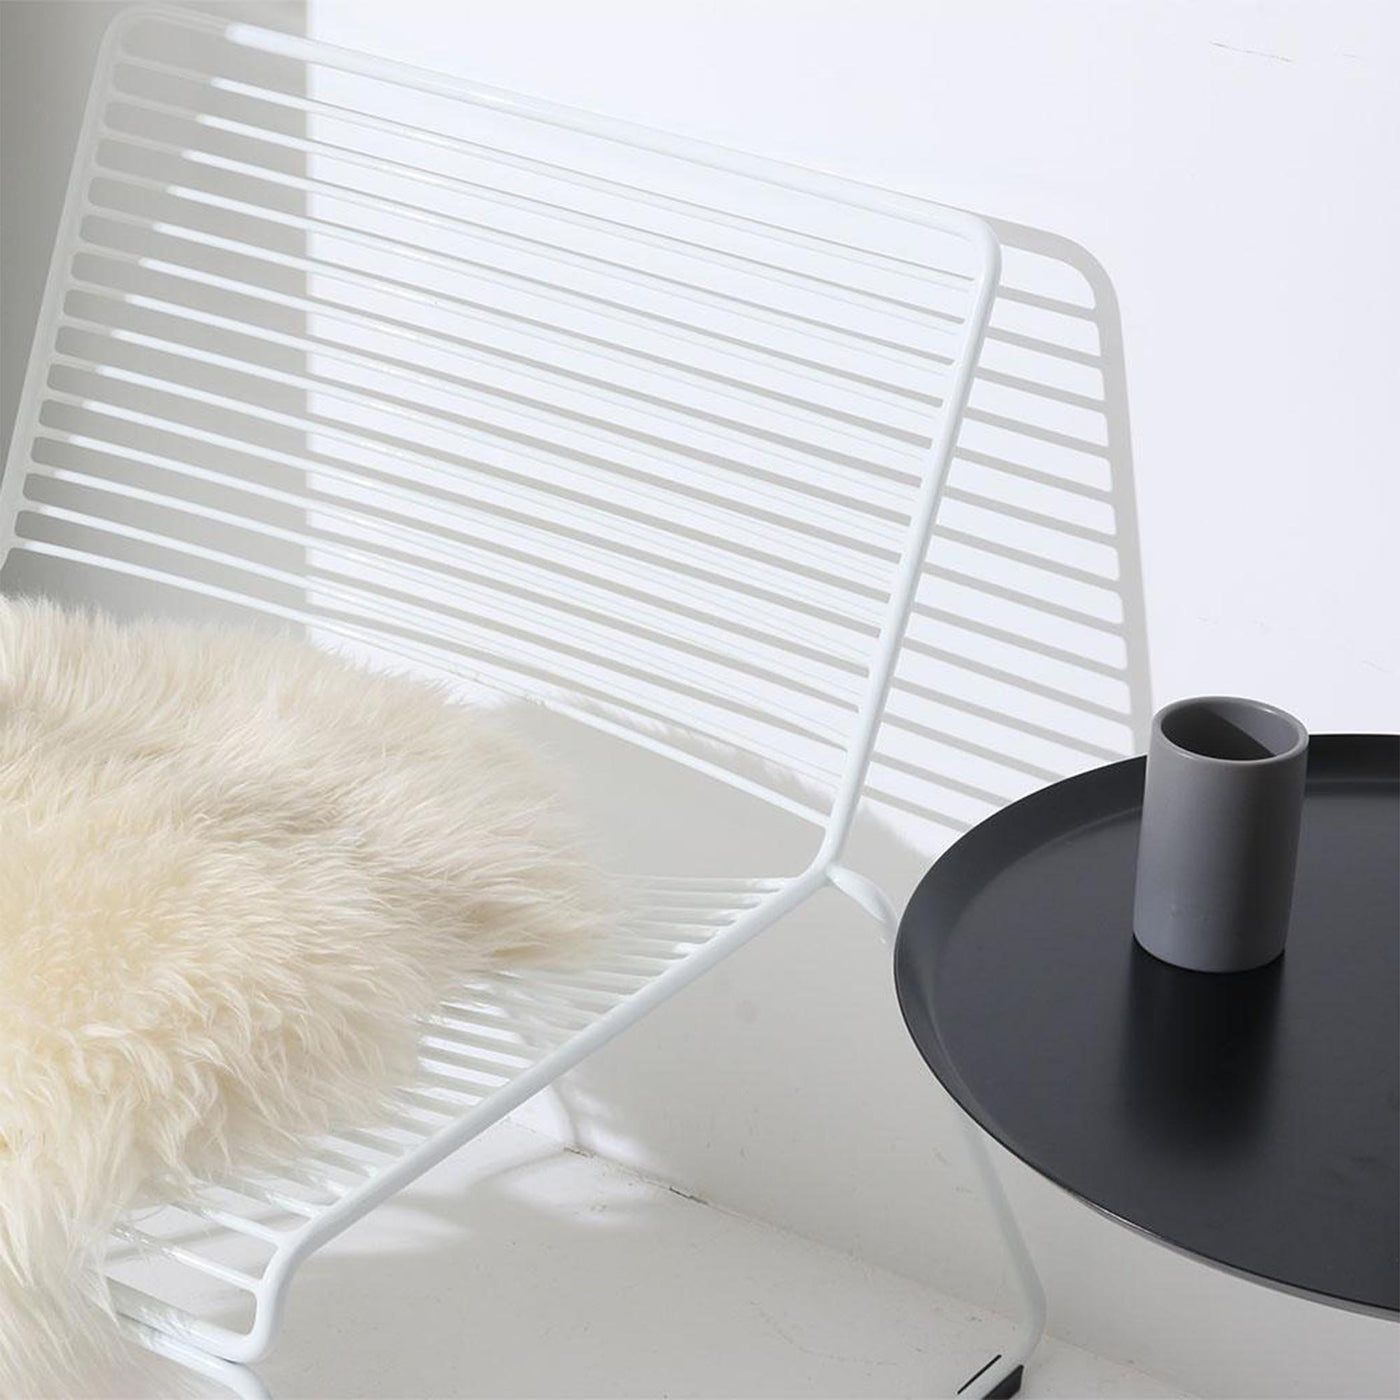 La chaise lounge HEE allie élégance décontractée et fonctionnalité. Son design minimaliste s'harmonise avec des proportions décontractées, offrant un confort inégalé et une praticité d'empilage.